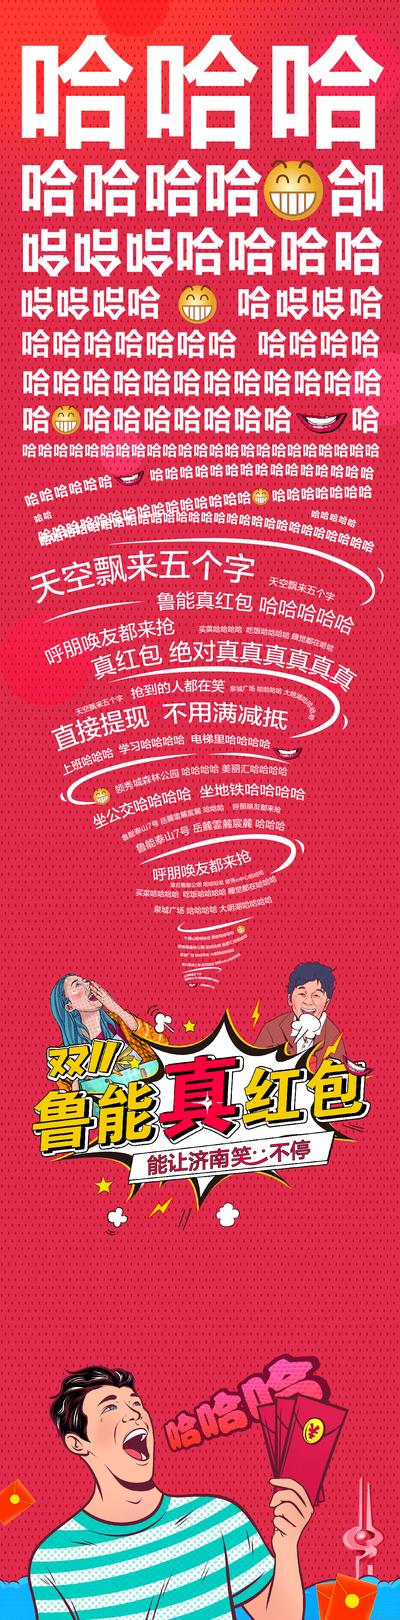 南门网 海报 长图 房地产 双十一  抢红包 钜惠 文字 龙卷风 插画  波普风 